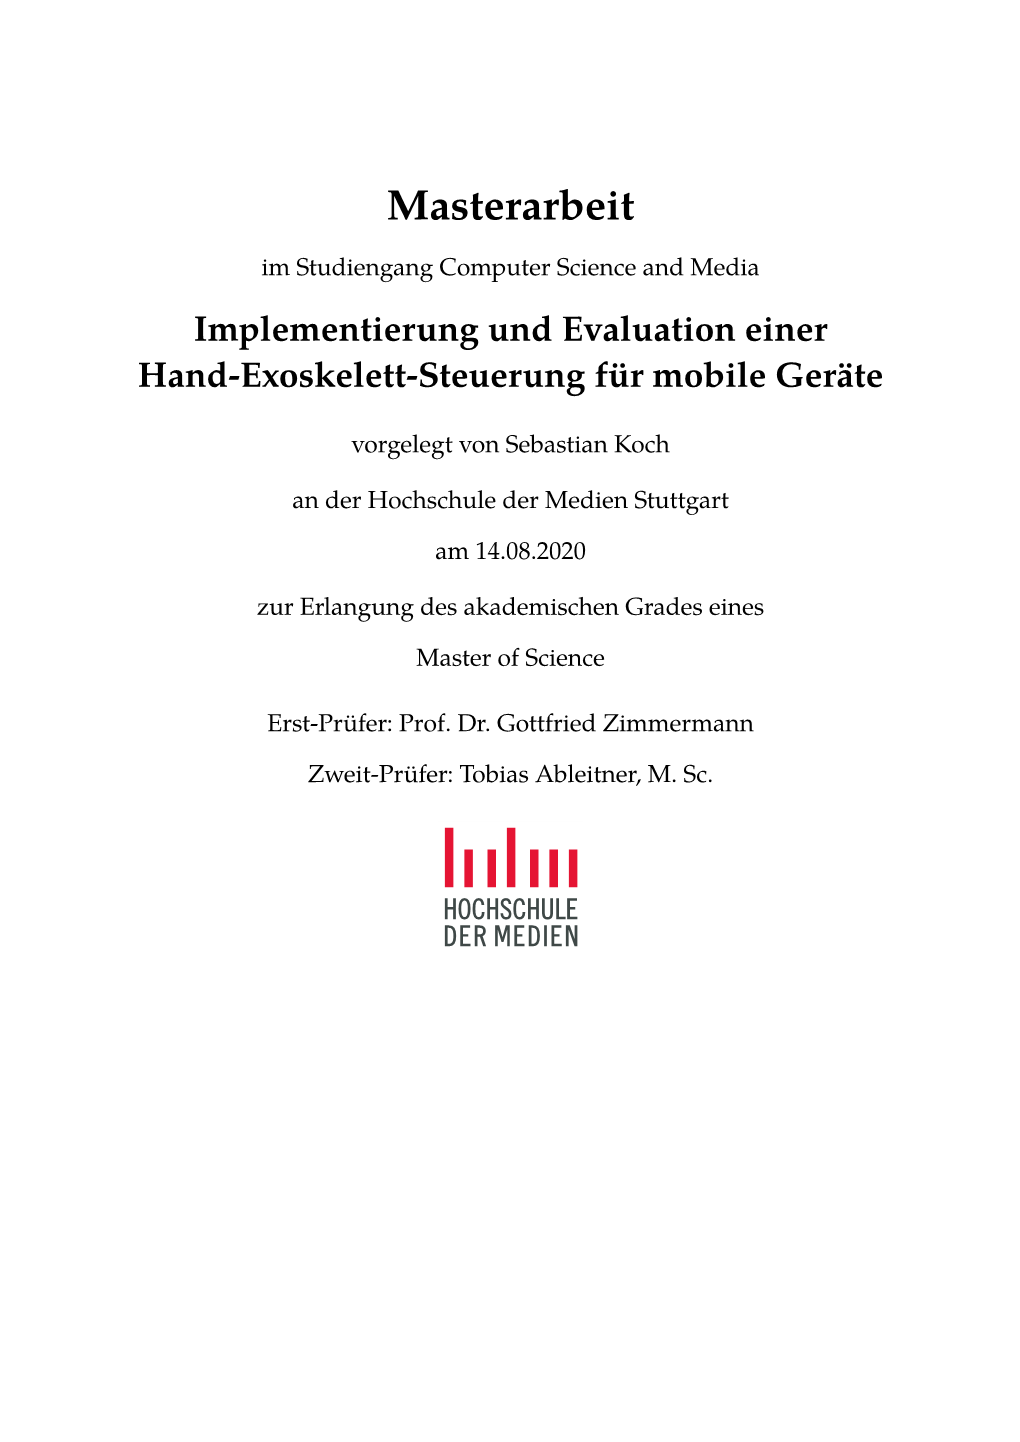 Implementierung Und Evaluation Einer Hand-Exoskelett-Steuerung Für Mobile Geräte